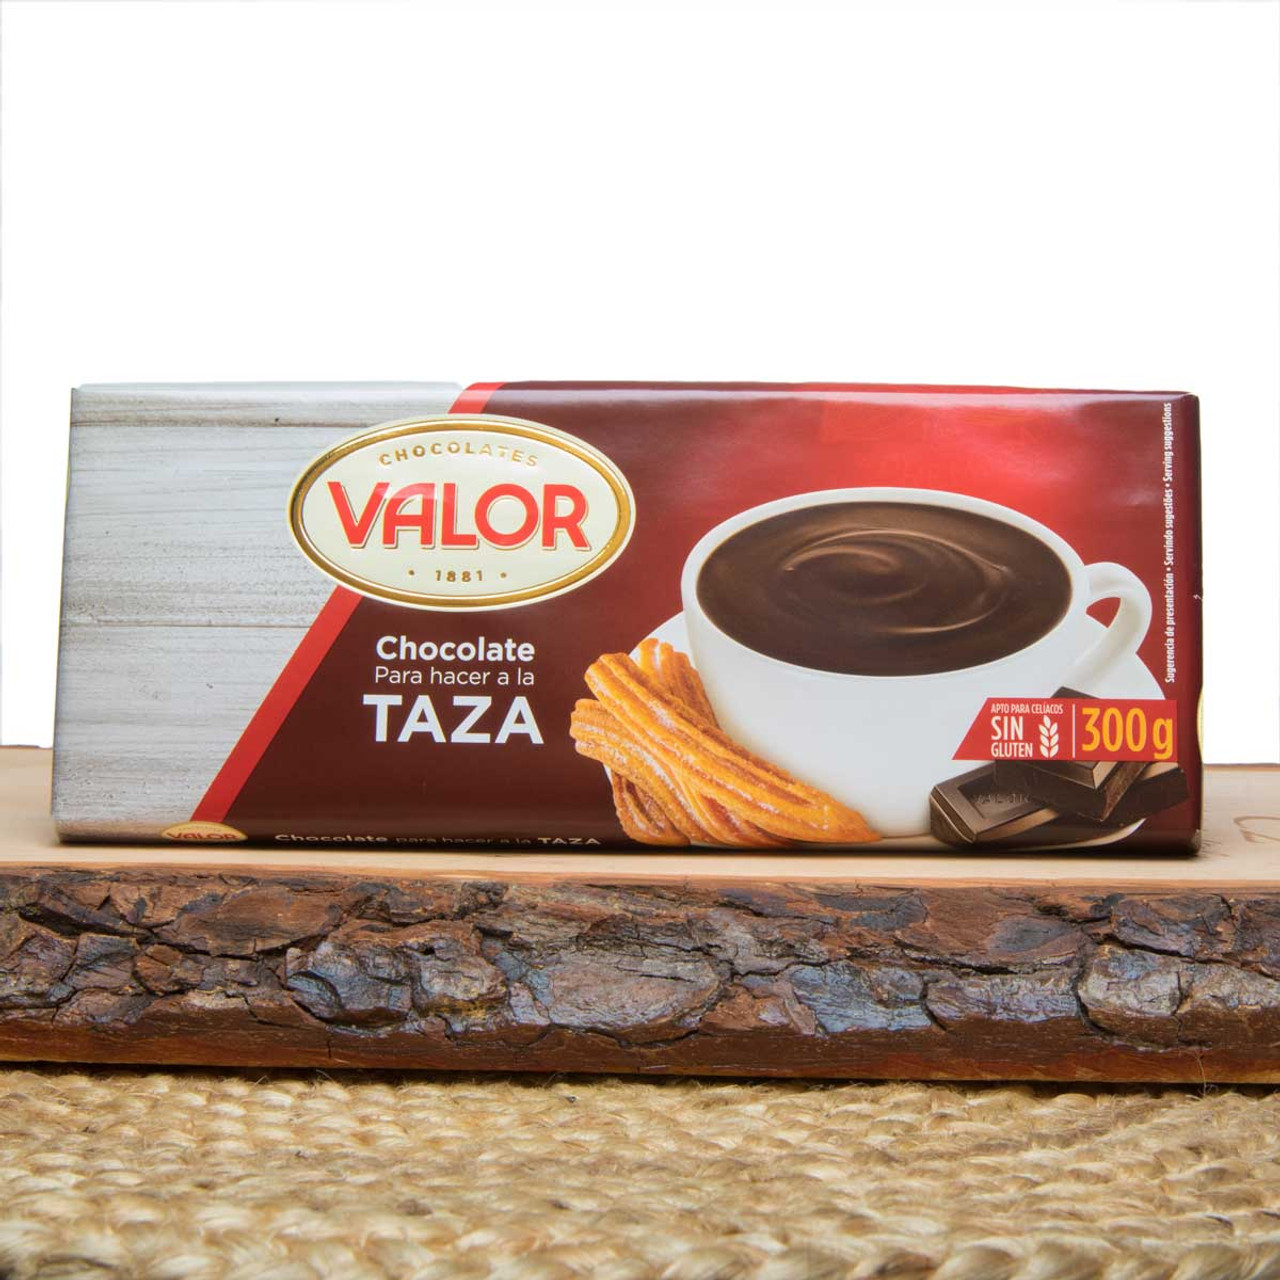 Tienda Delicias - Valor Hot Chocolate a la Taza